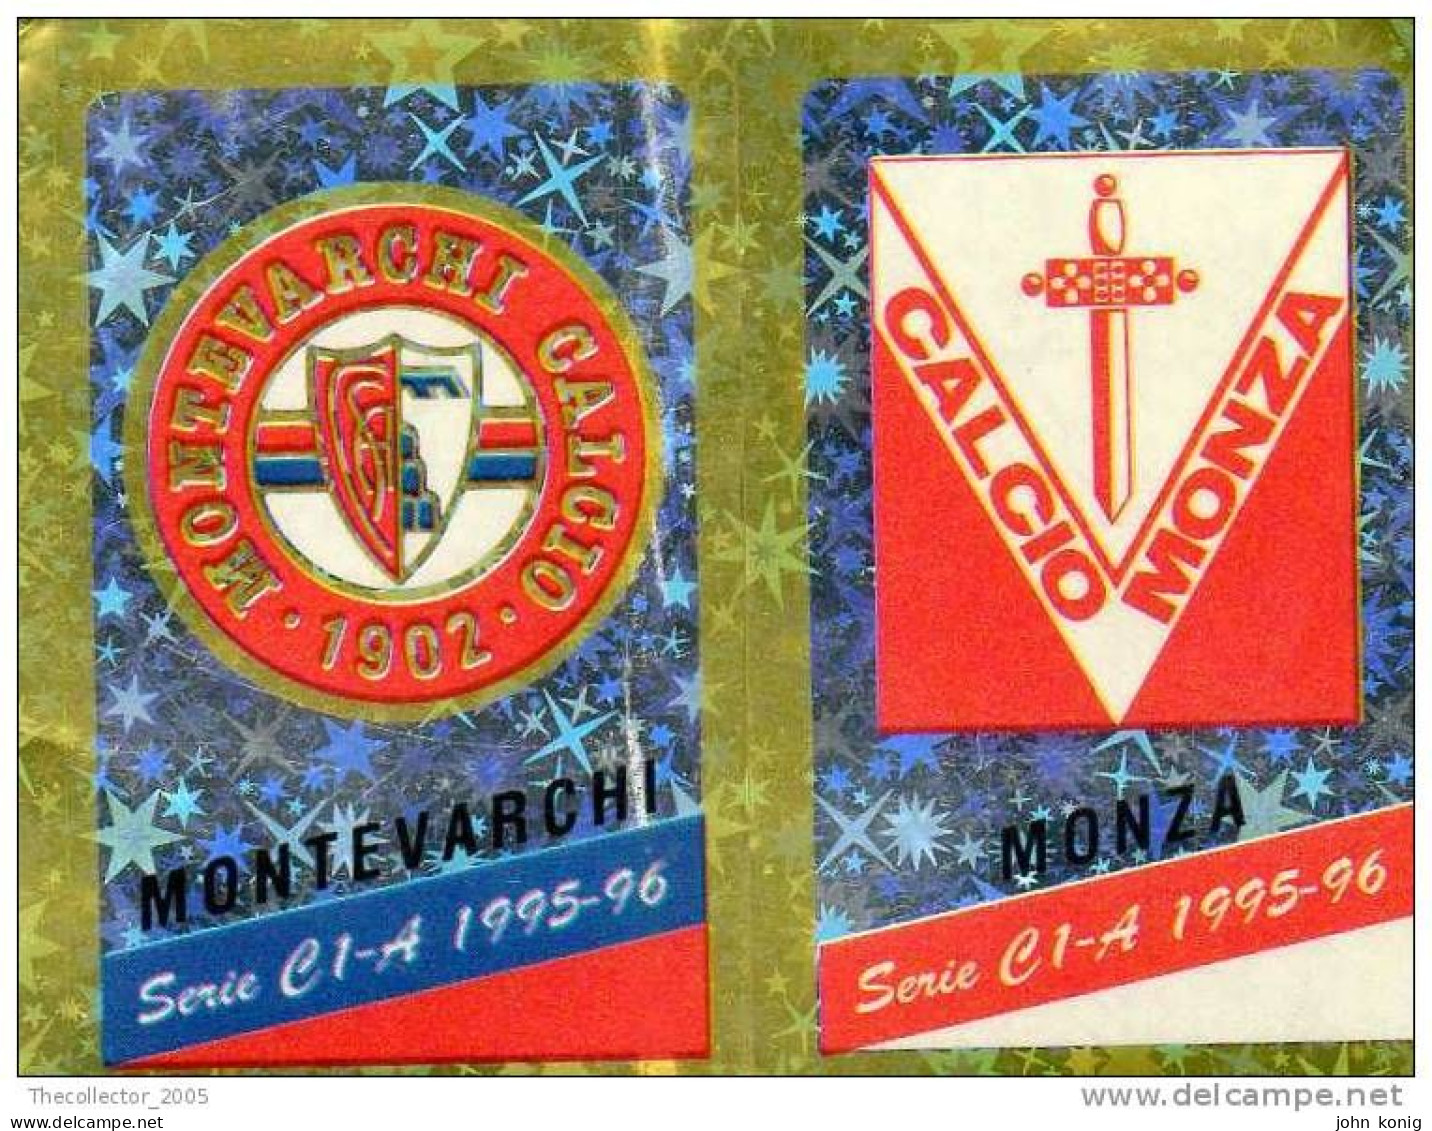 CALCIATORI - CALCIO Figurine Panini-calciatori 1995-96-n.539ab-scudetto Montevarchi-Monza (prismatico) - NUOVA-MAI INCOL - Edizione Italiana